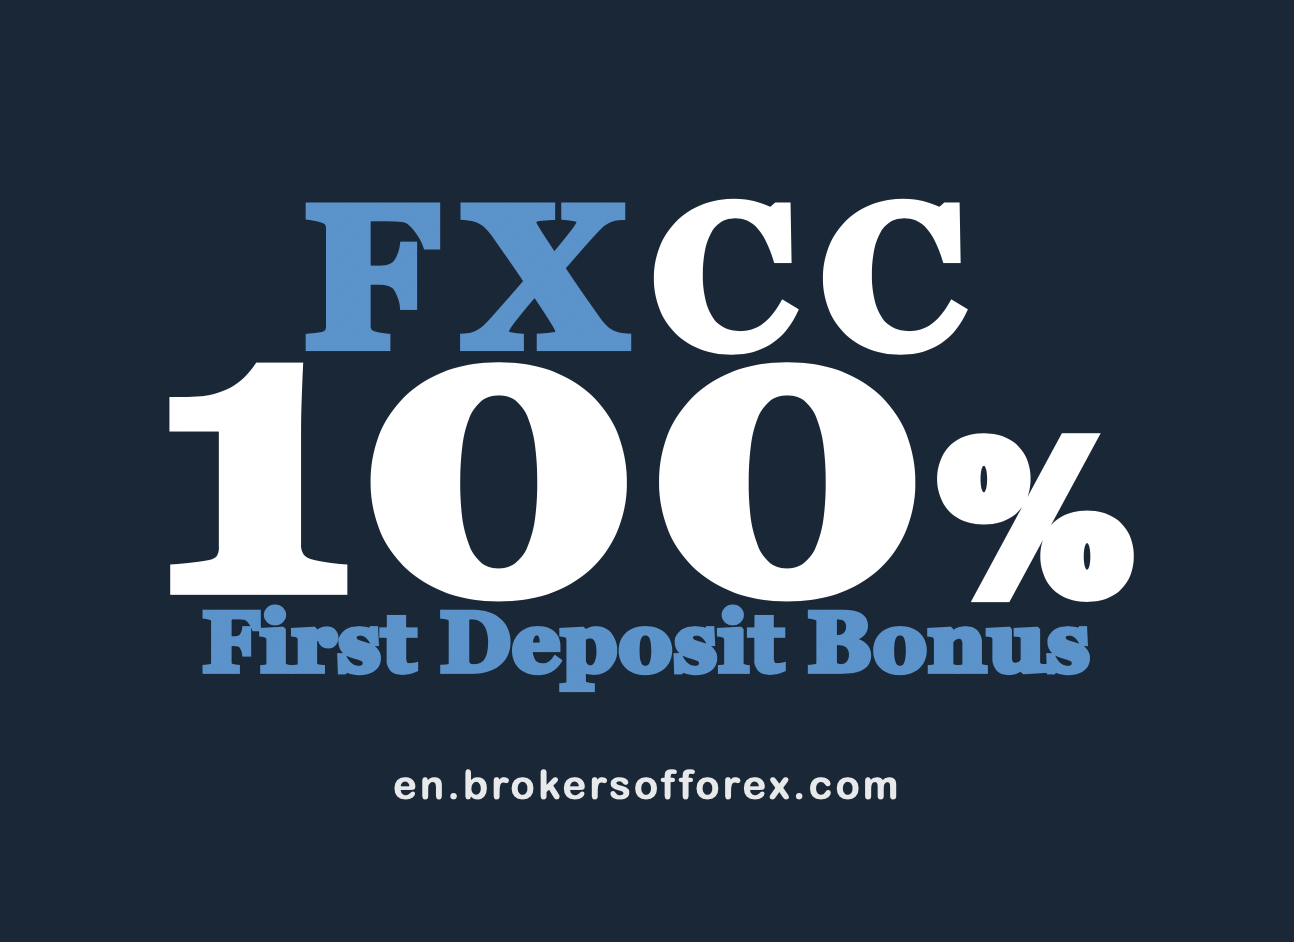 FXCC First Deposit Bonus